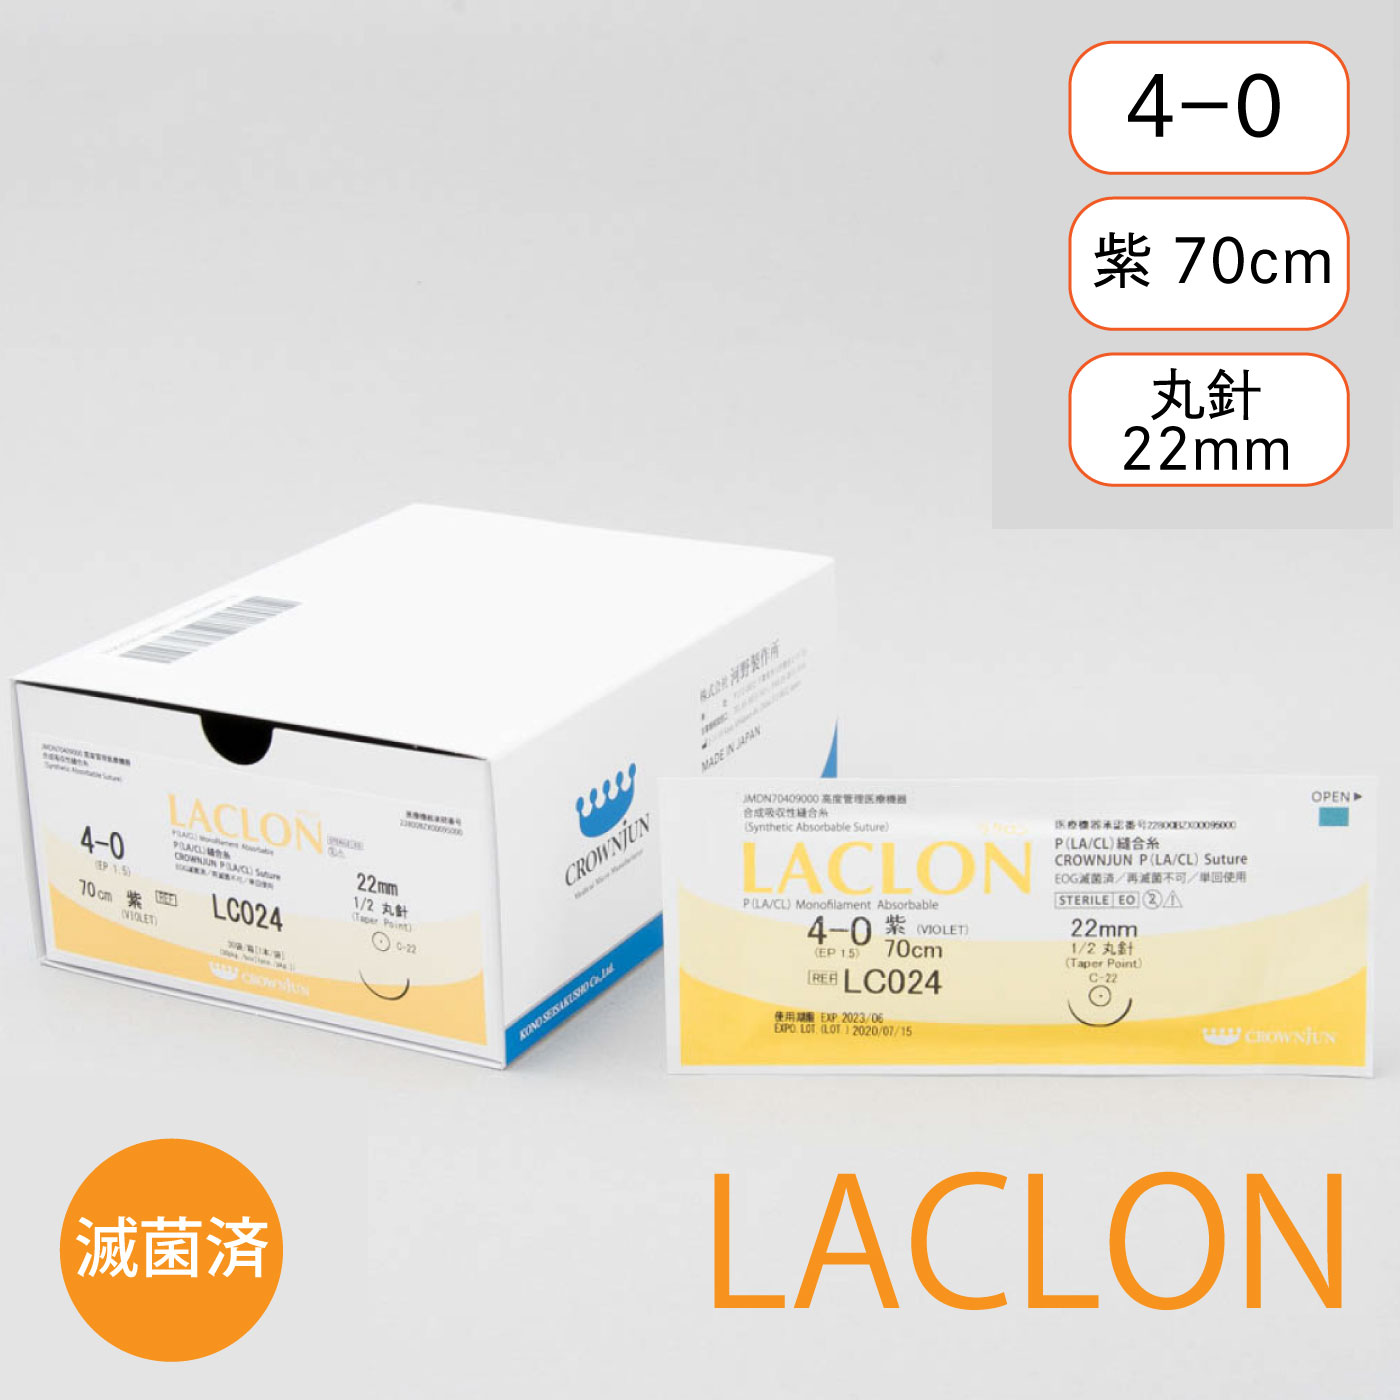 針付ラクロン C-22mm/4-0/70cm/紫/モノフィラメント吸収糸【LC024】